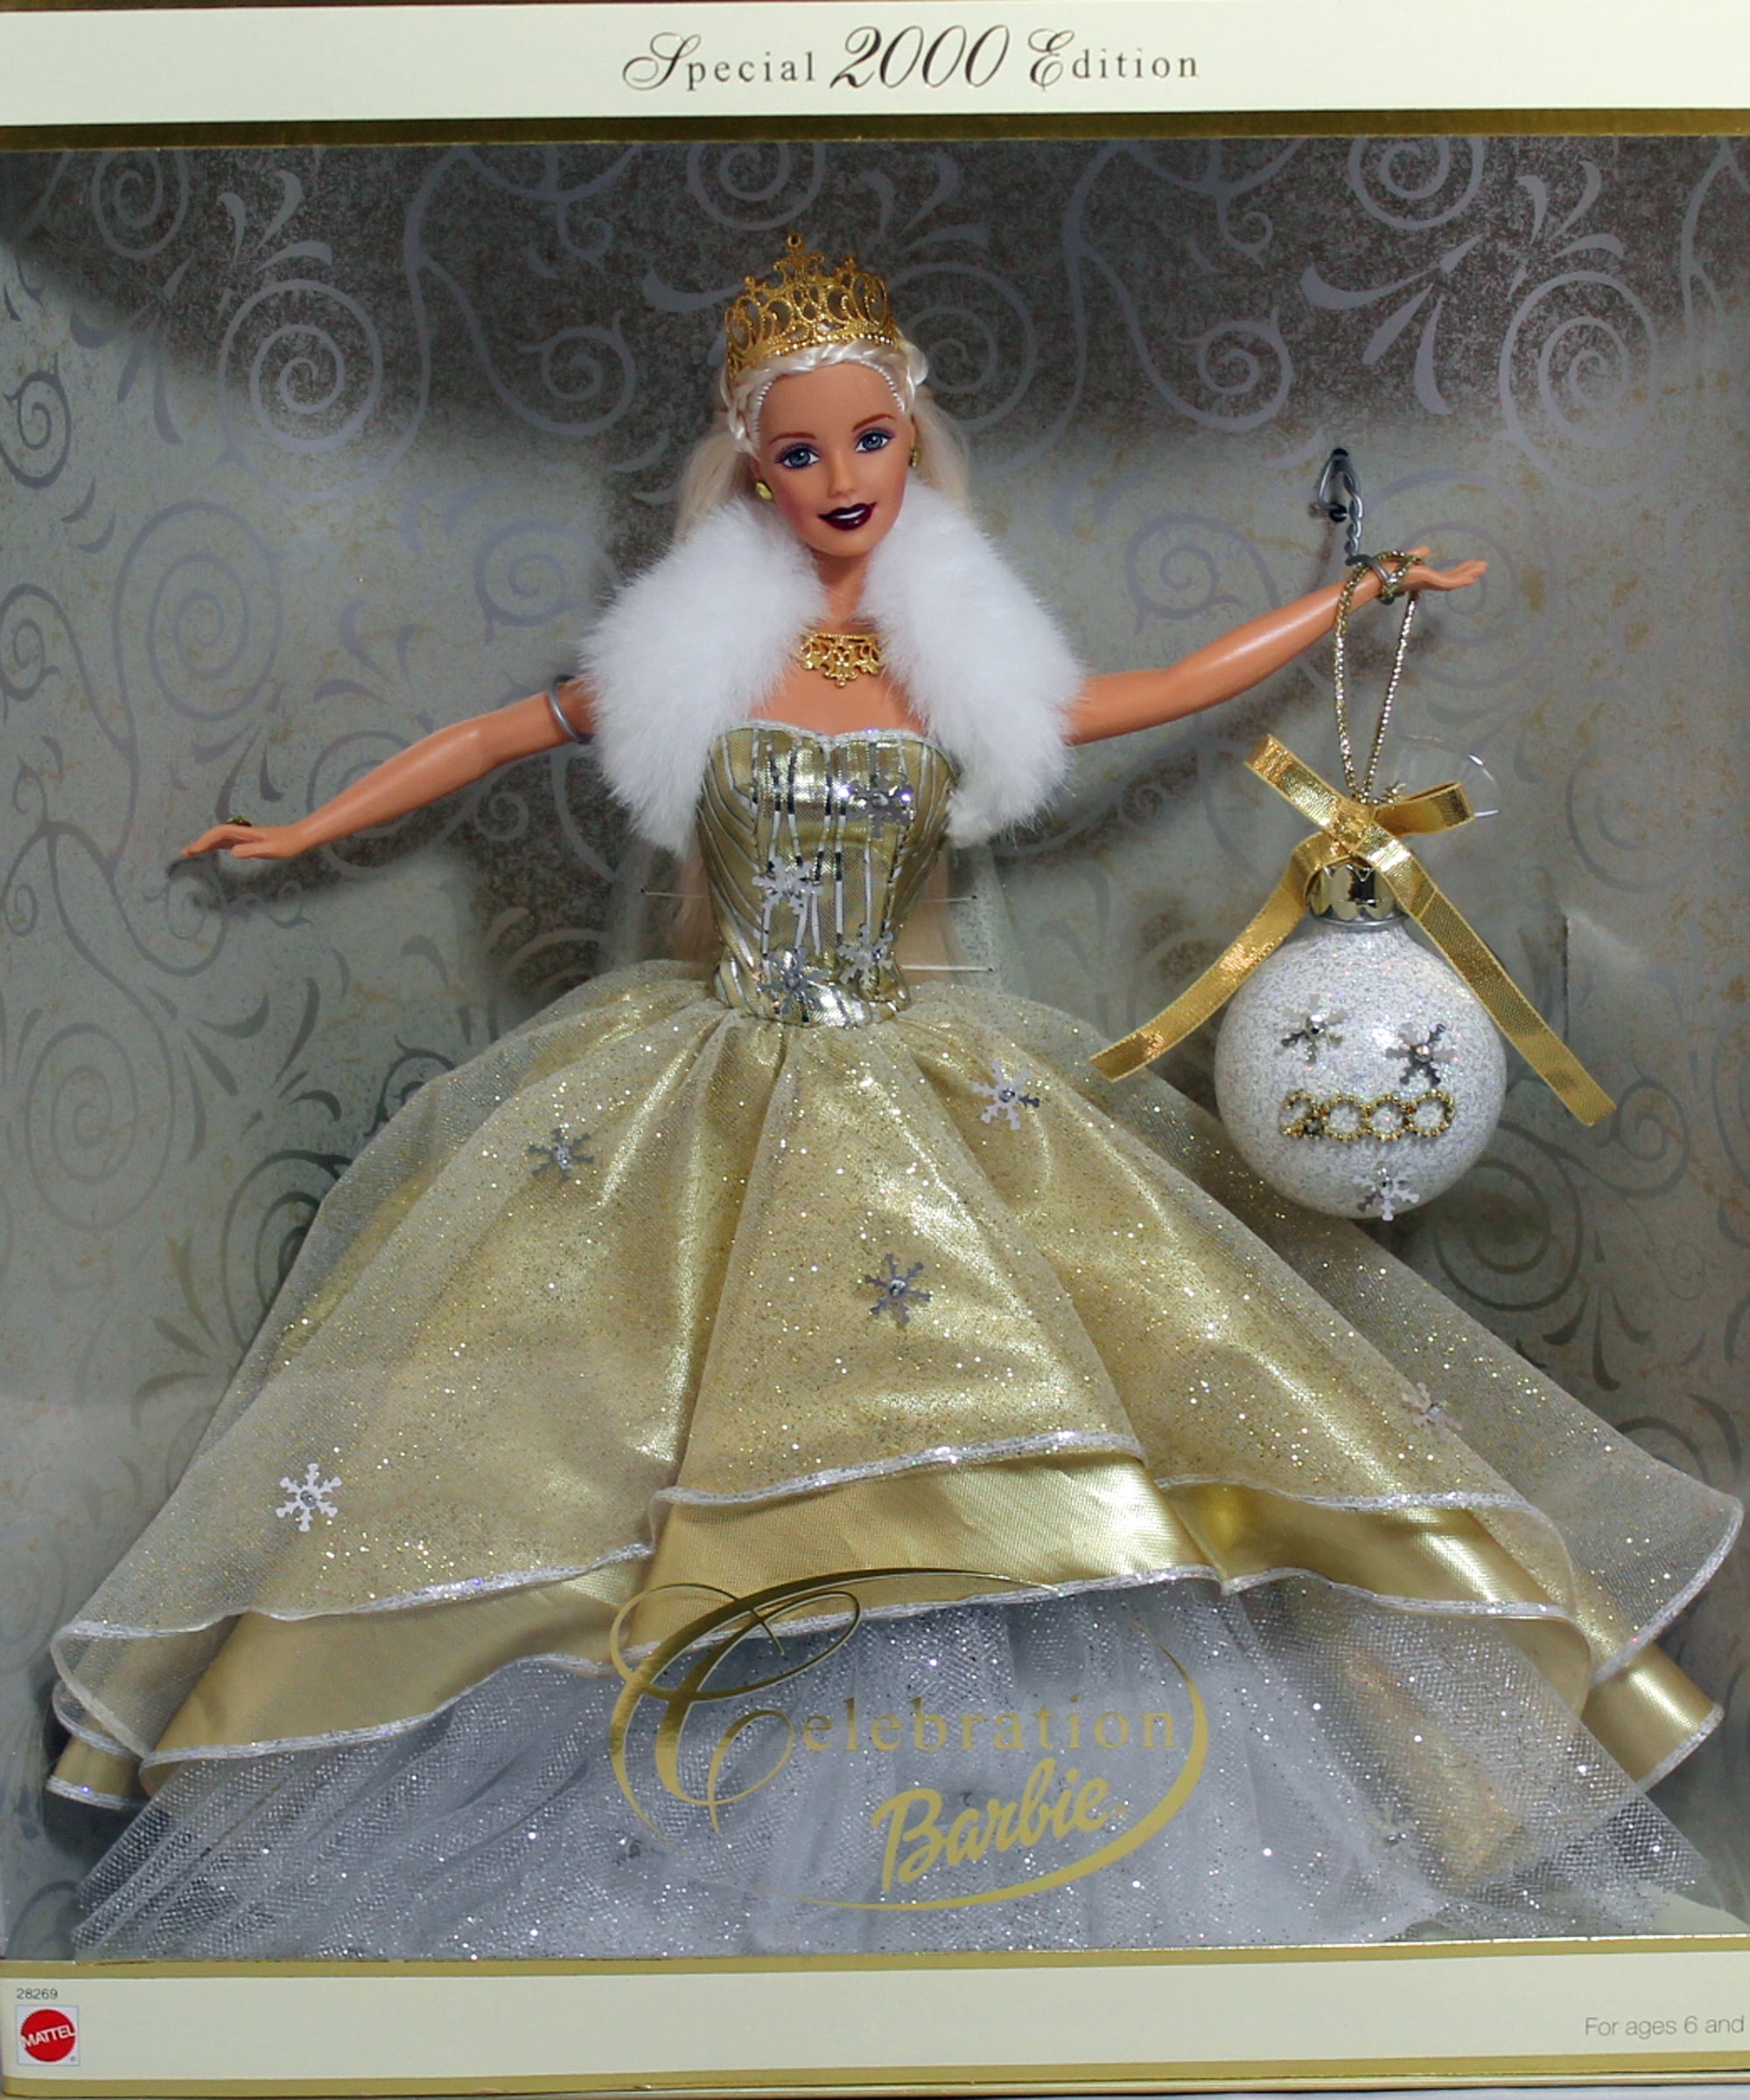 kleding stof En Verpletteren 2000 Celebration Barbie, NRFB, (28269) Non-Mint Box - Walmart.com